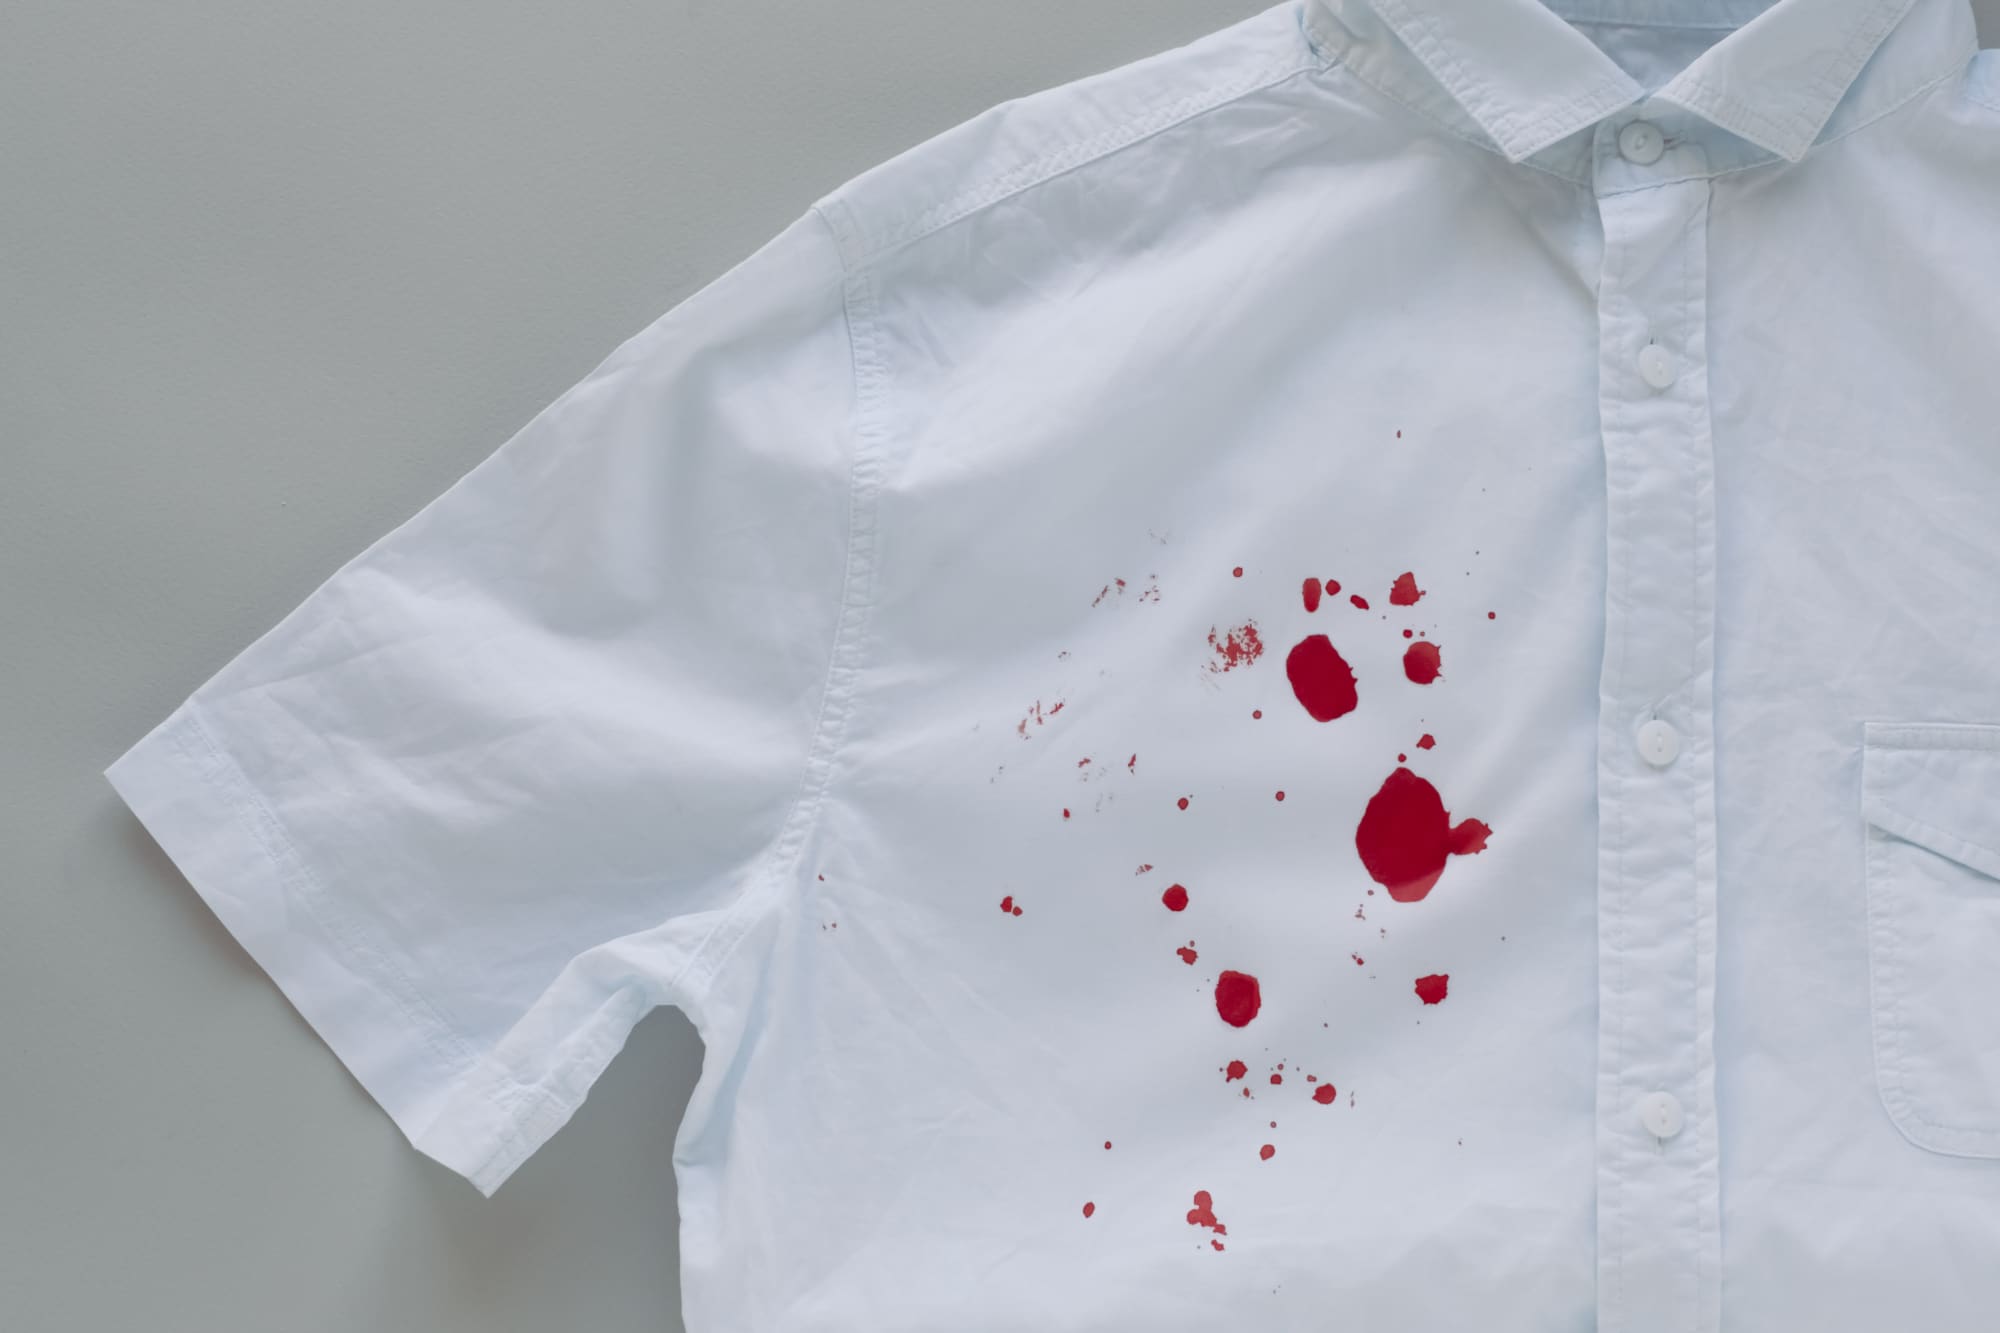 Comment enlever une tache de sang sur un vêtement ?